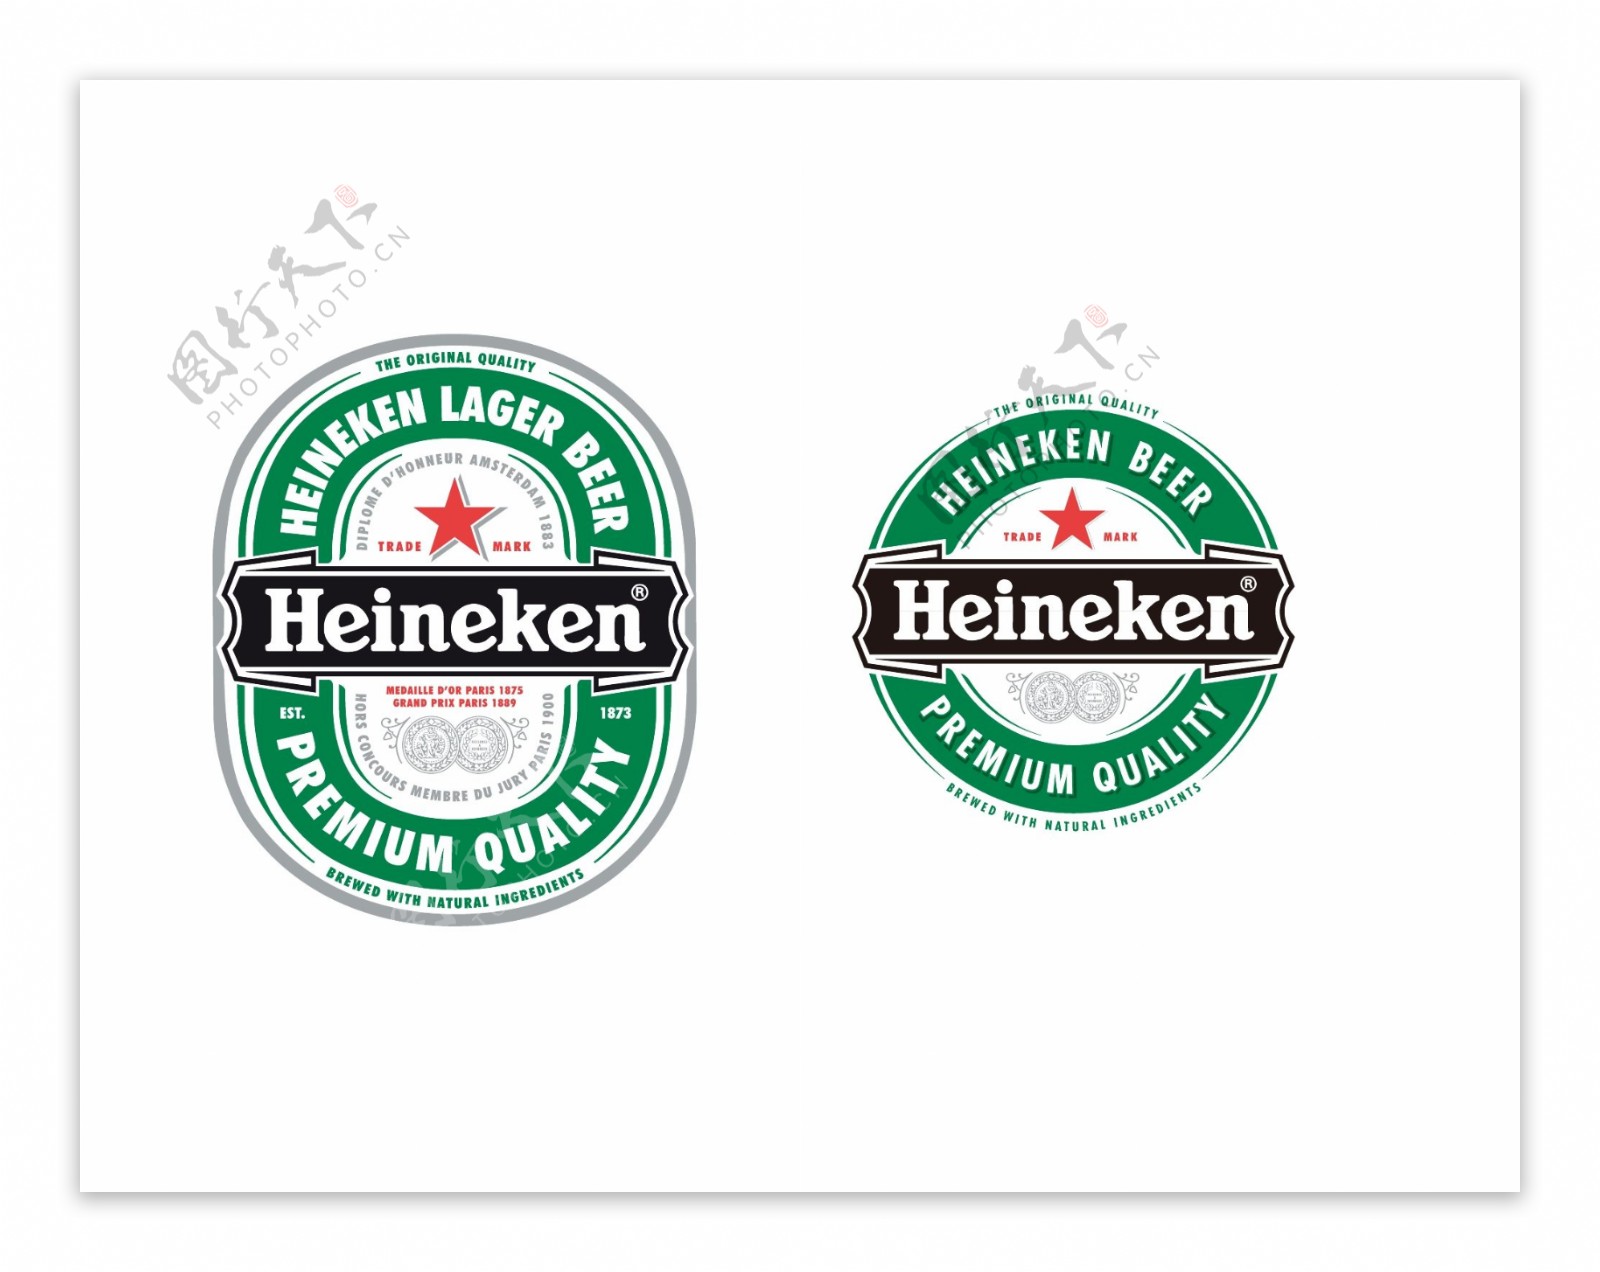 喜力啤酒logo标志图片